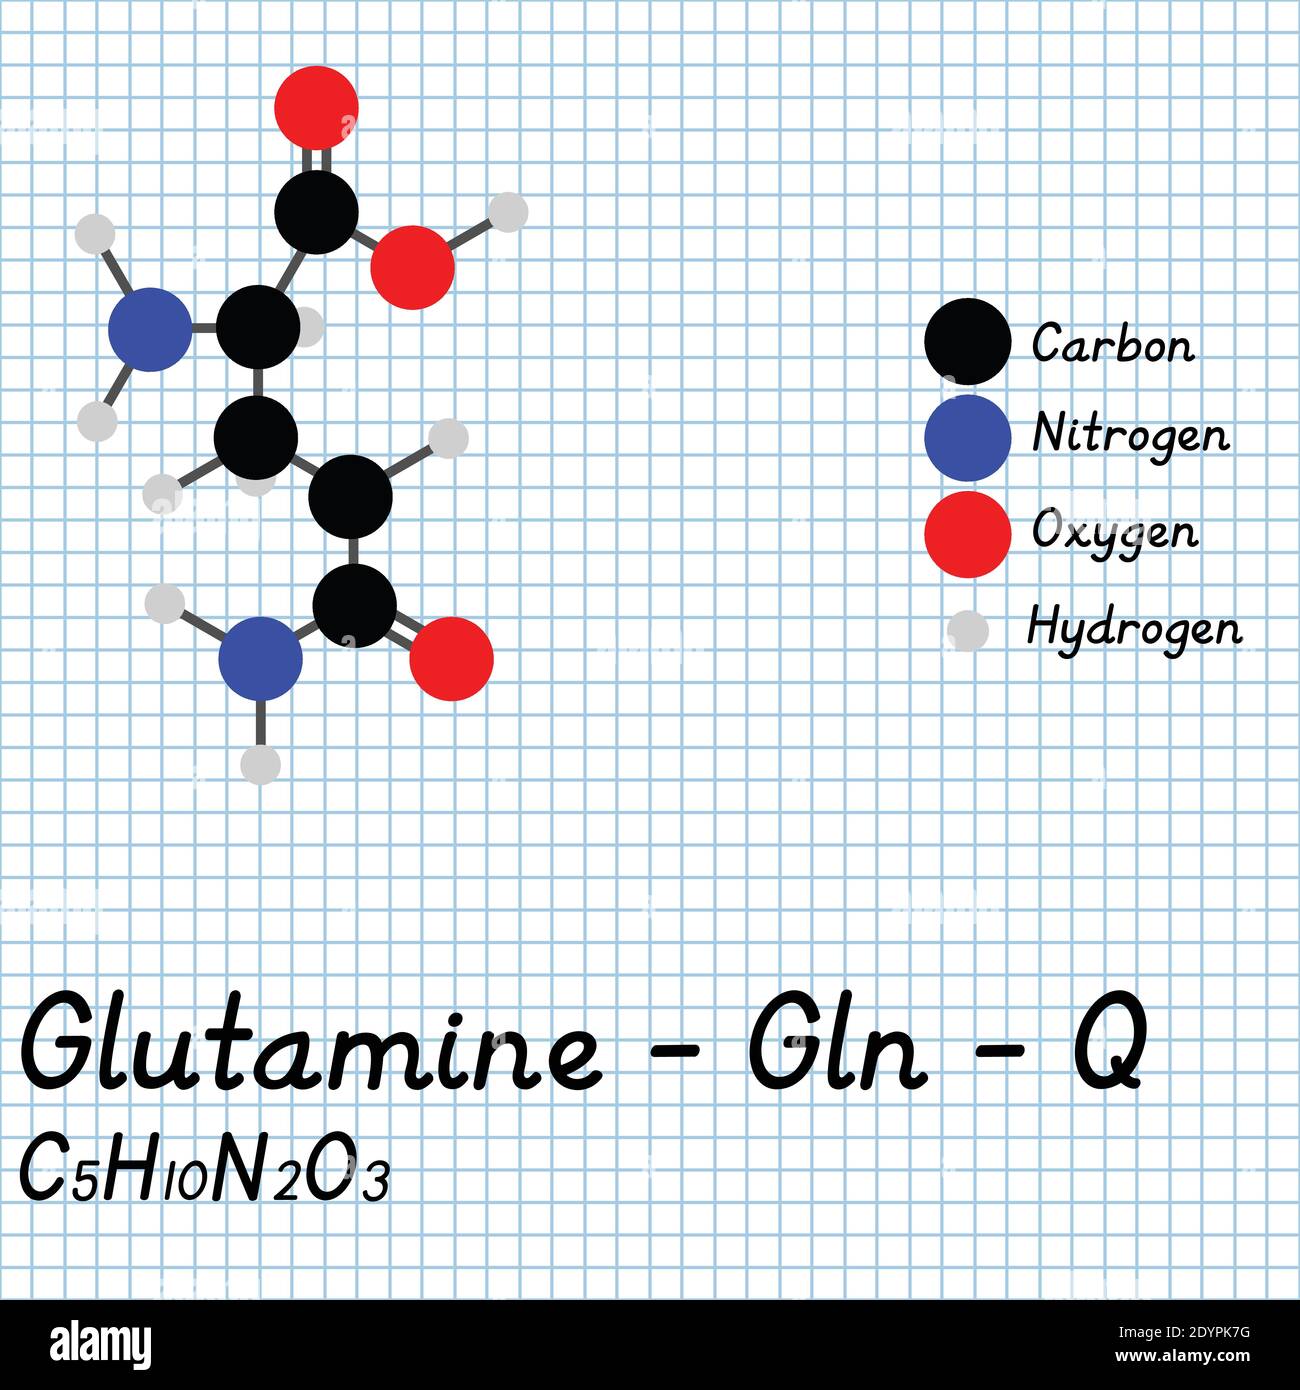 Glutamine - Gln - Q acides aminés formule moléculaire et structure chimique . Modèle de boule et de bâton 2D sur fond de feuille de papier de l'école. EPS10 Illustration de Vecteur